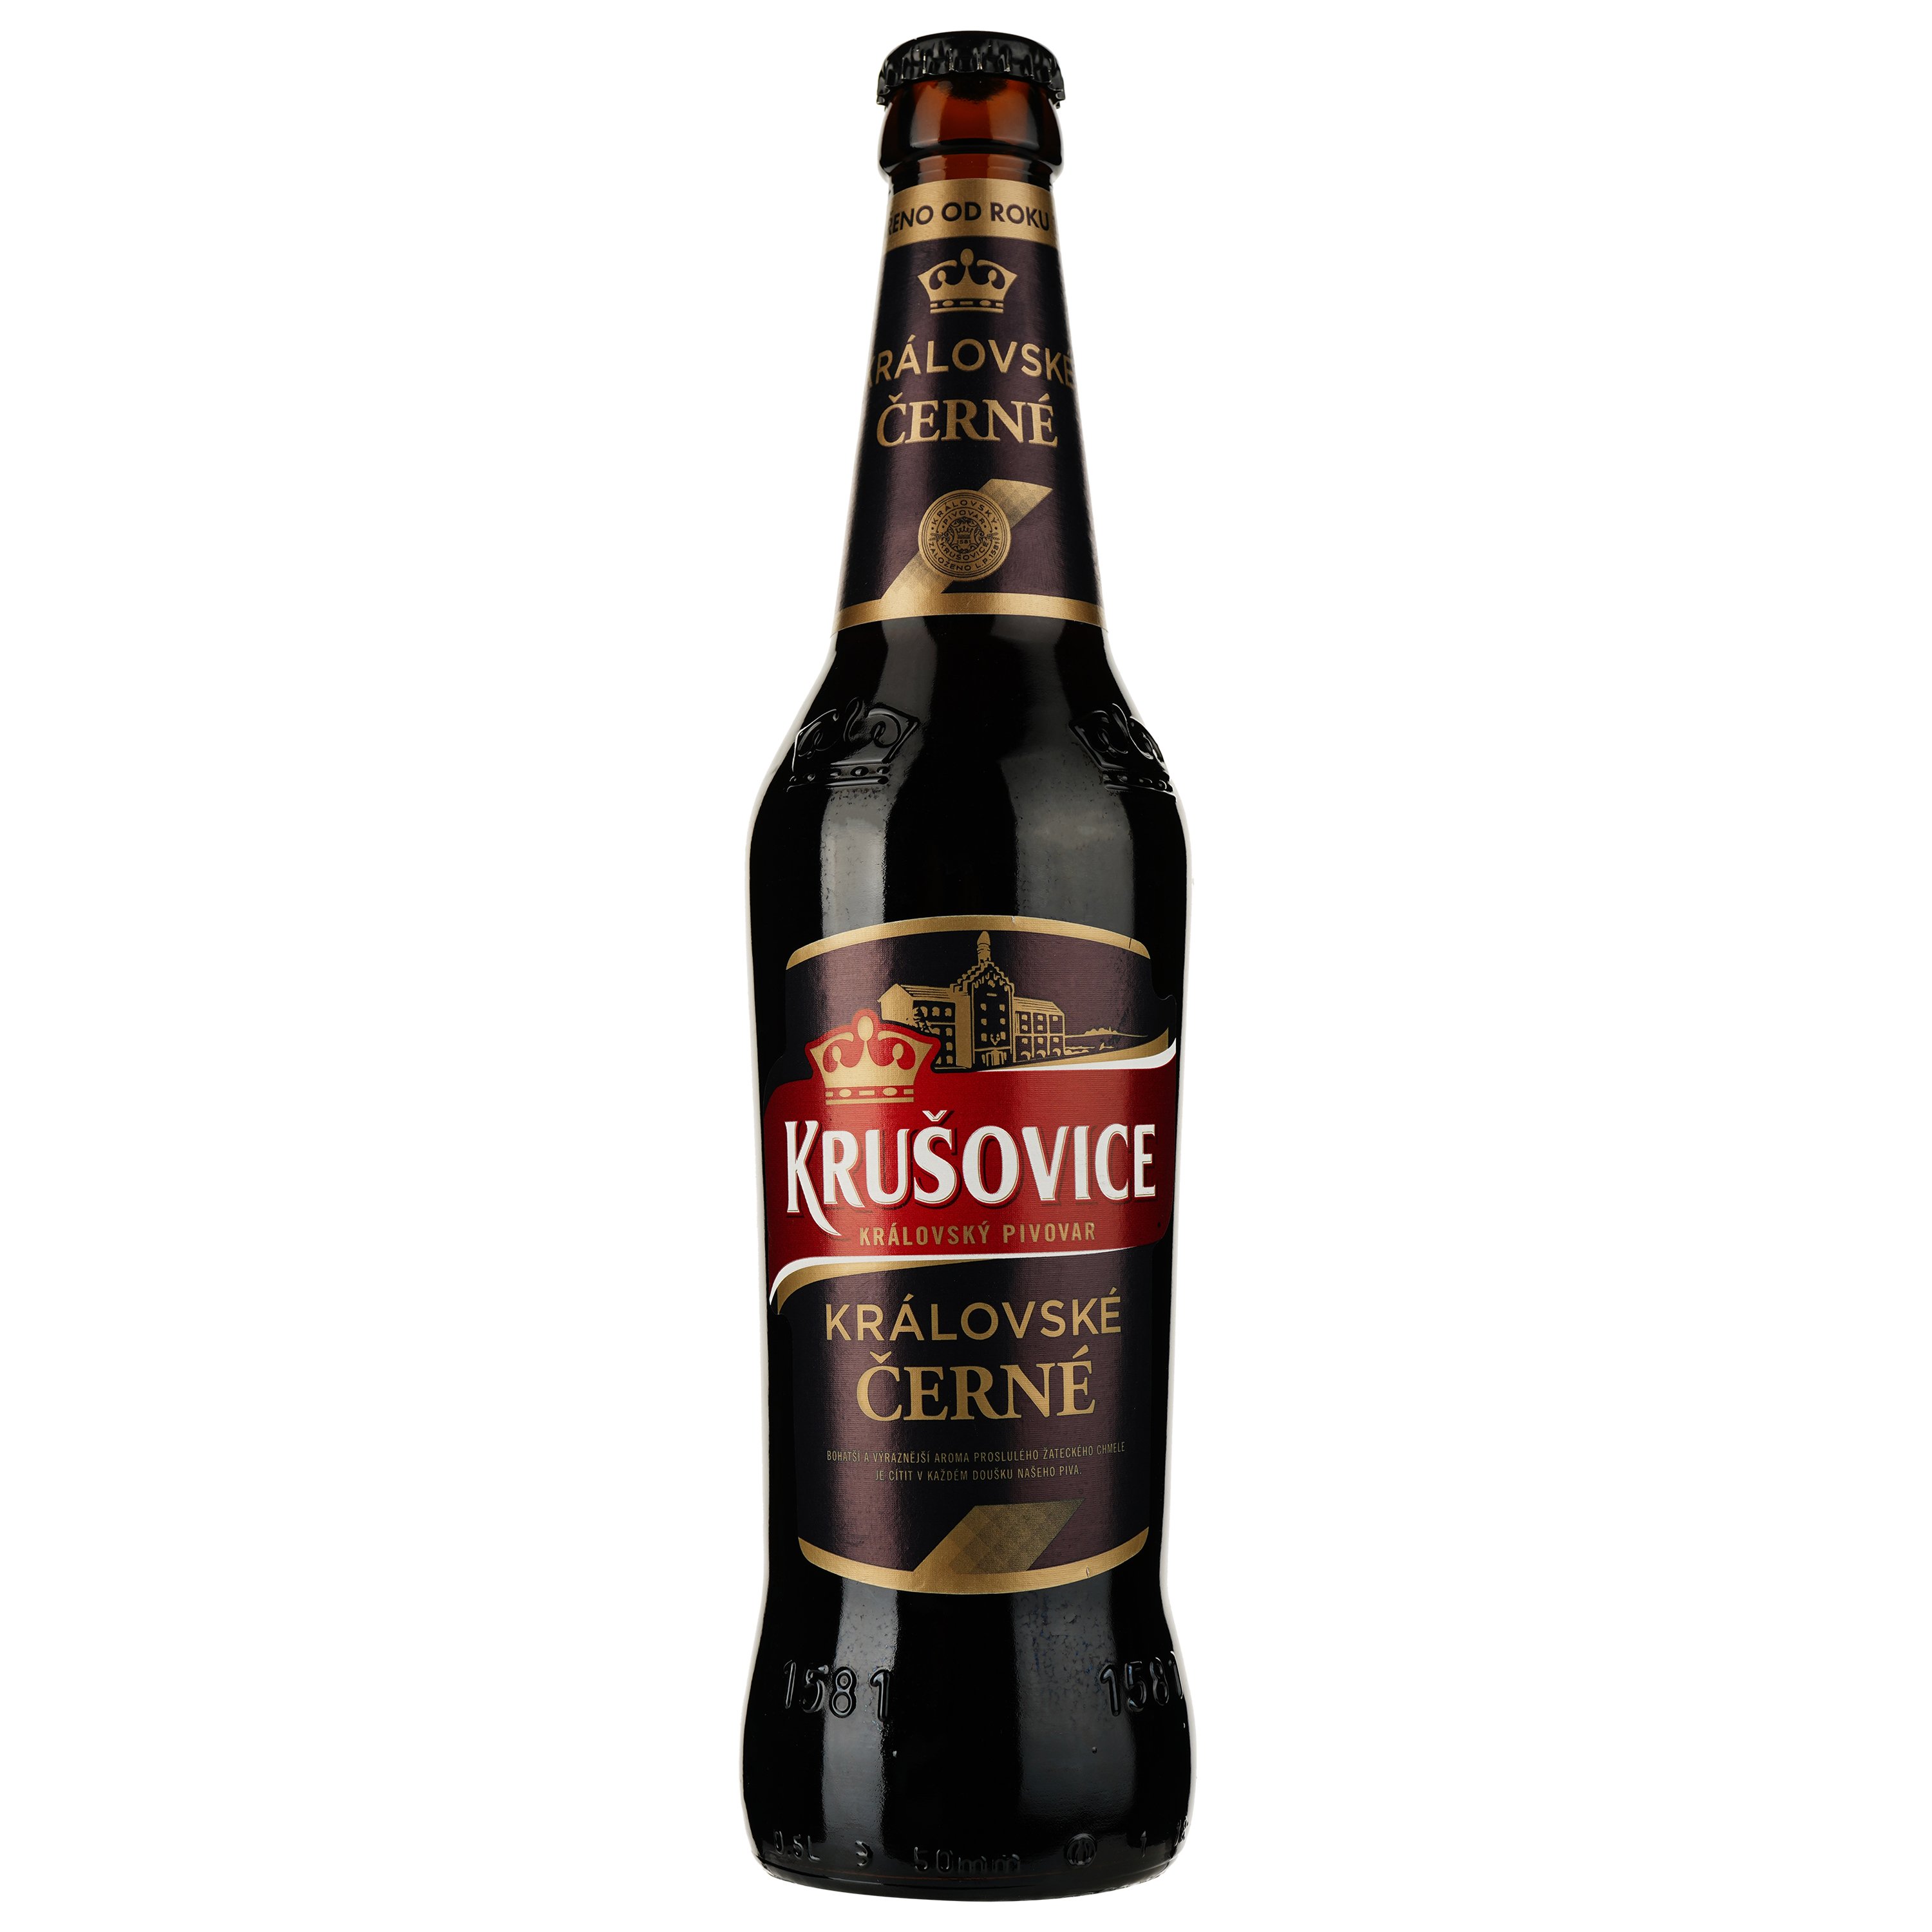 Пиво Krusovice Cerne, темное, 3,8%, 0,5 л (714652) - фото 1